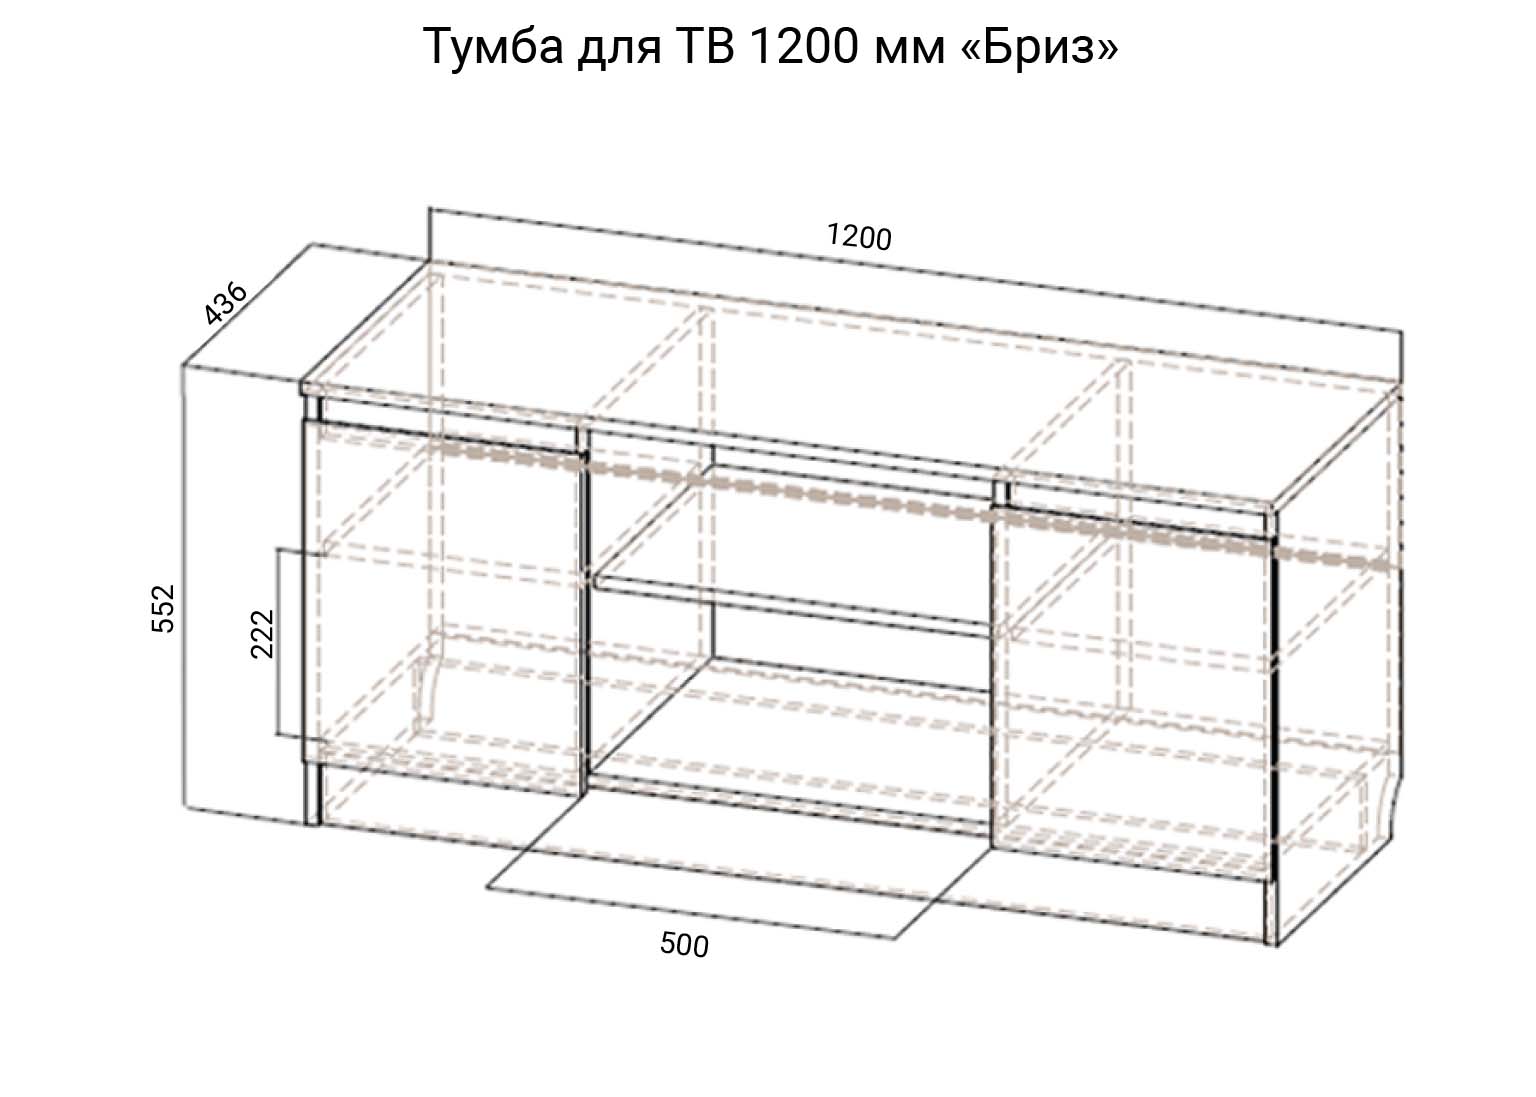 Тумба для ТВ 1200 схема Модульная система Бриз SV-Мебель